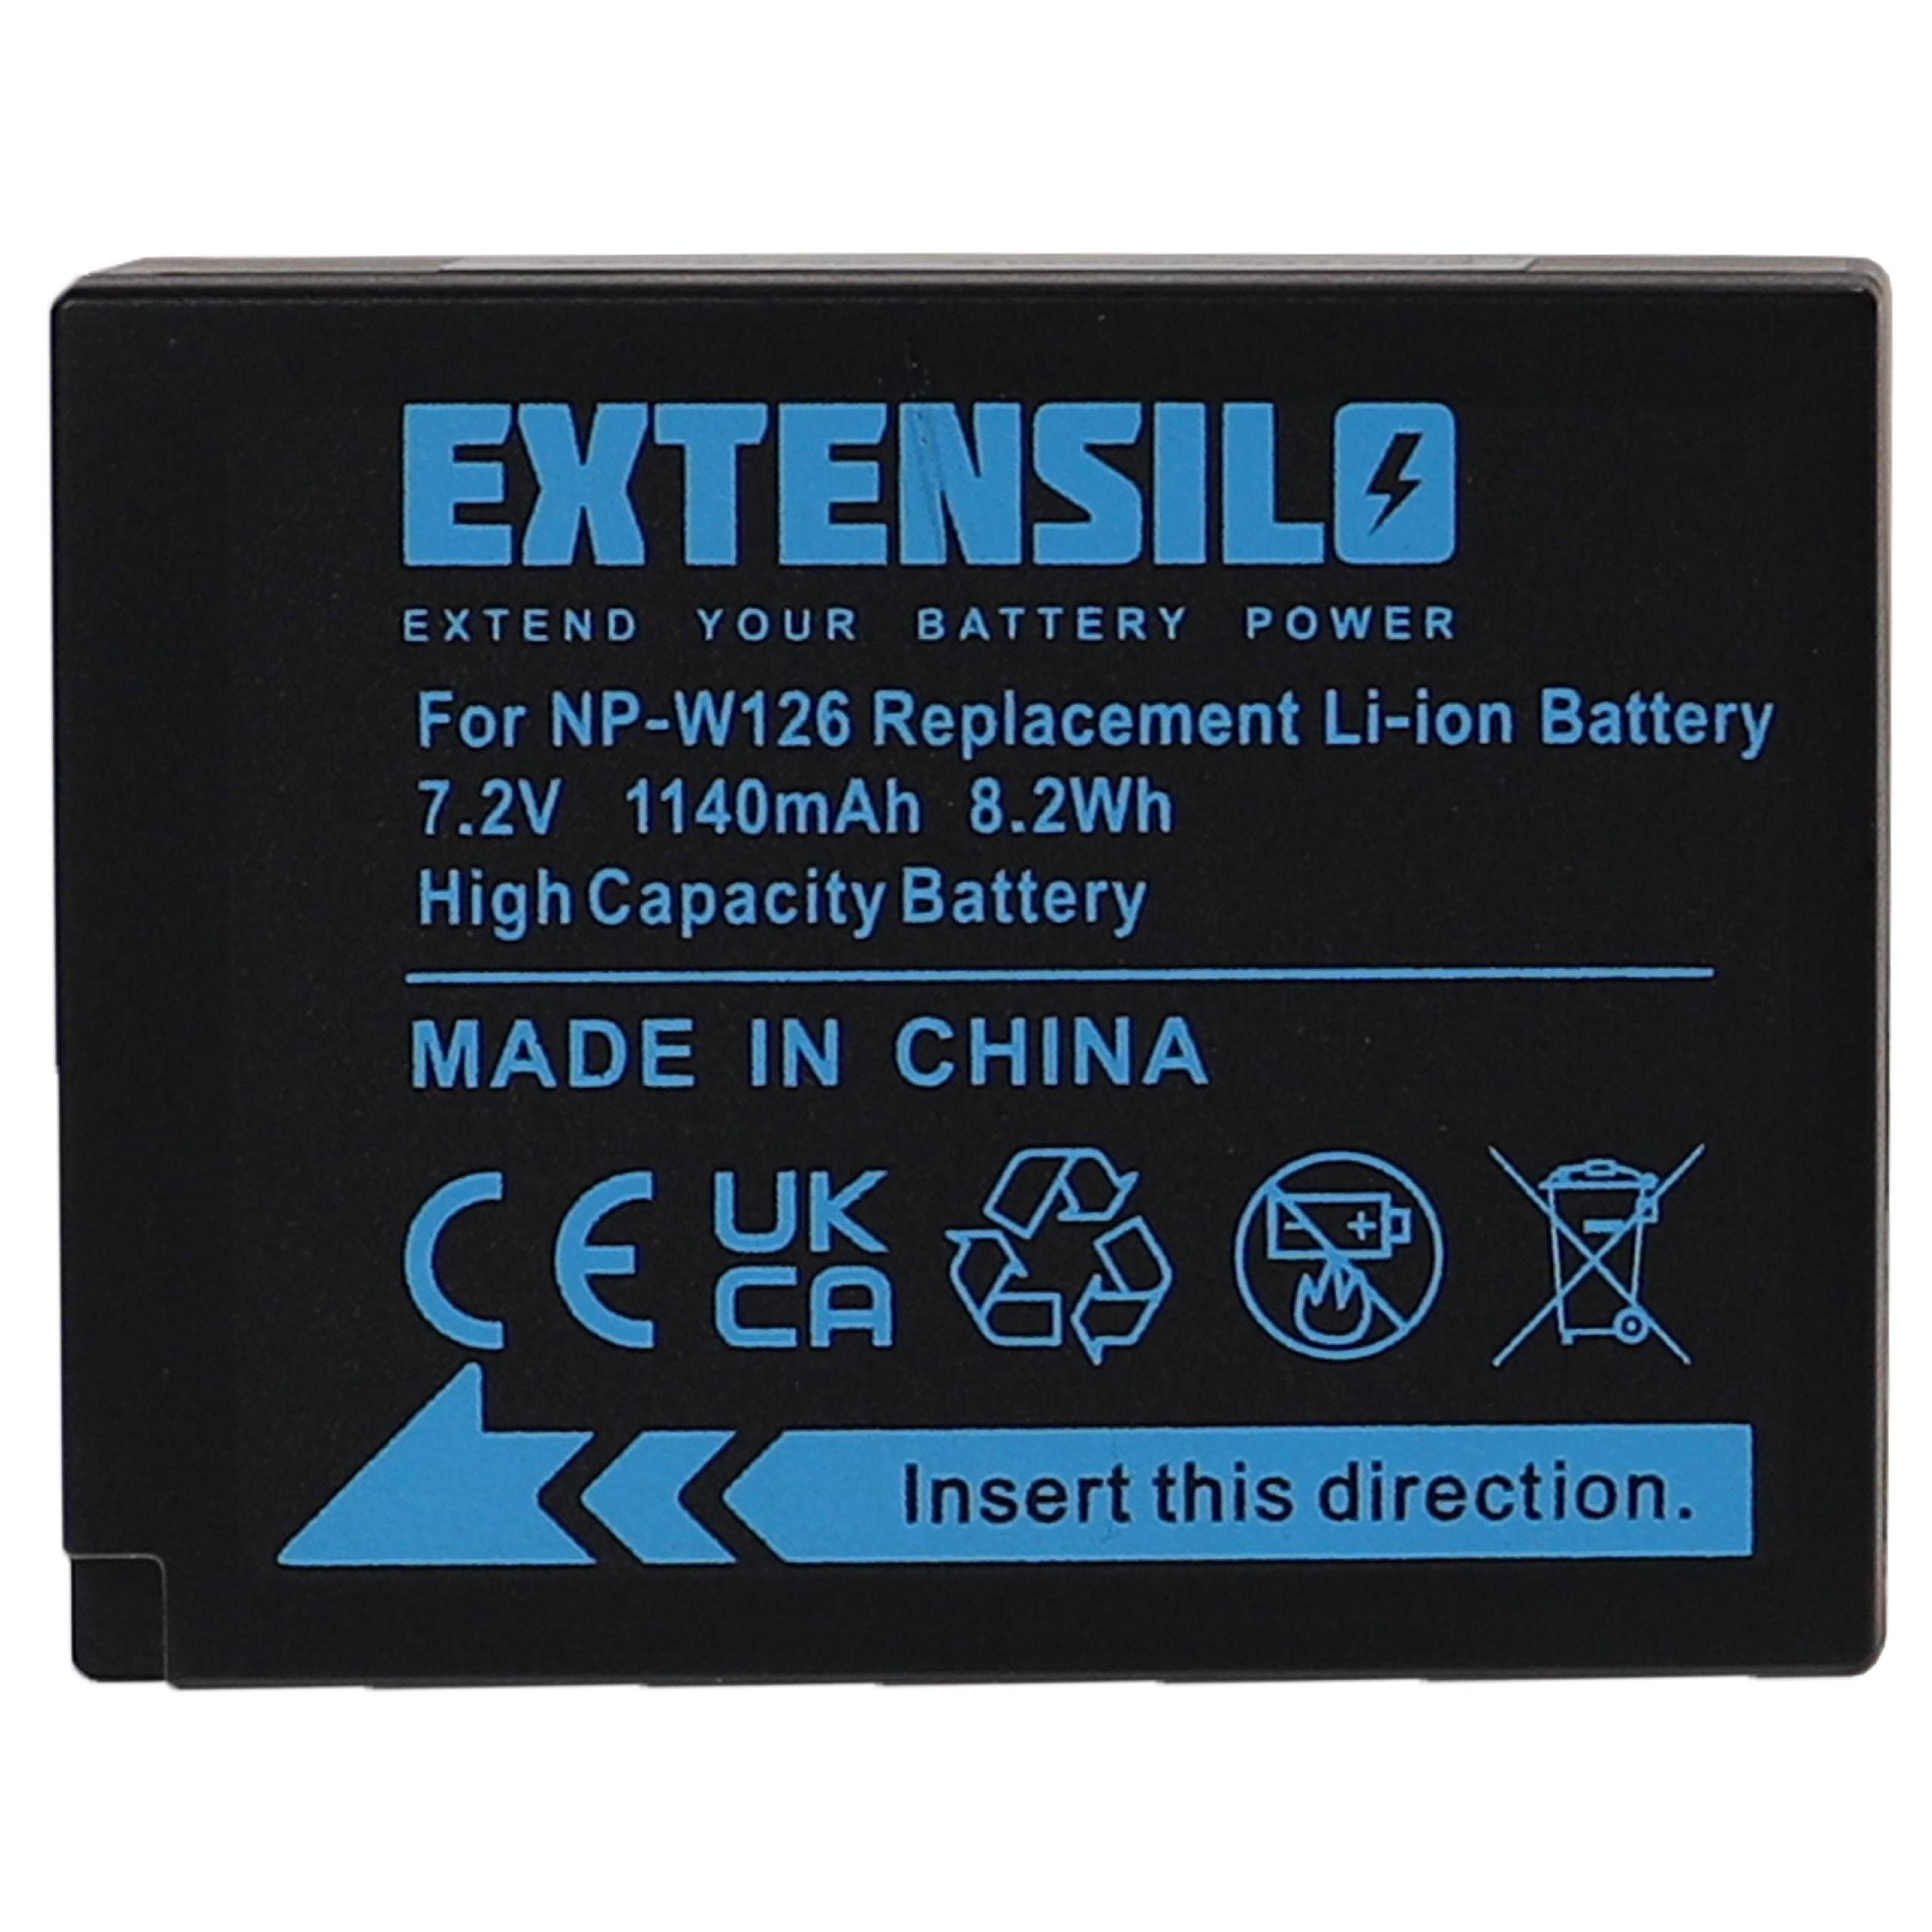 Batterie remplace Fujifilm NP-W126, NP-W126s pour appareil photo - 1140mAh 7,2V Li-ion